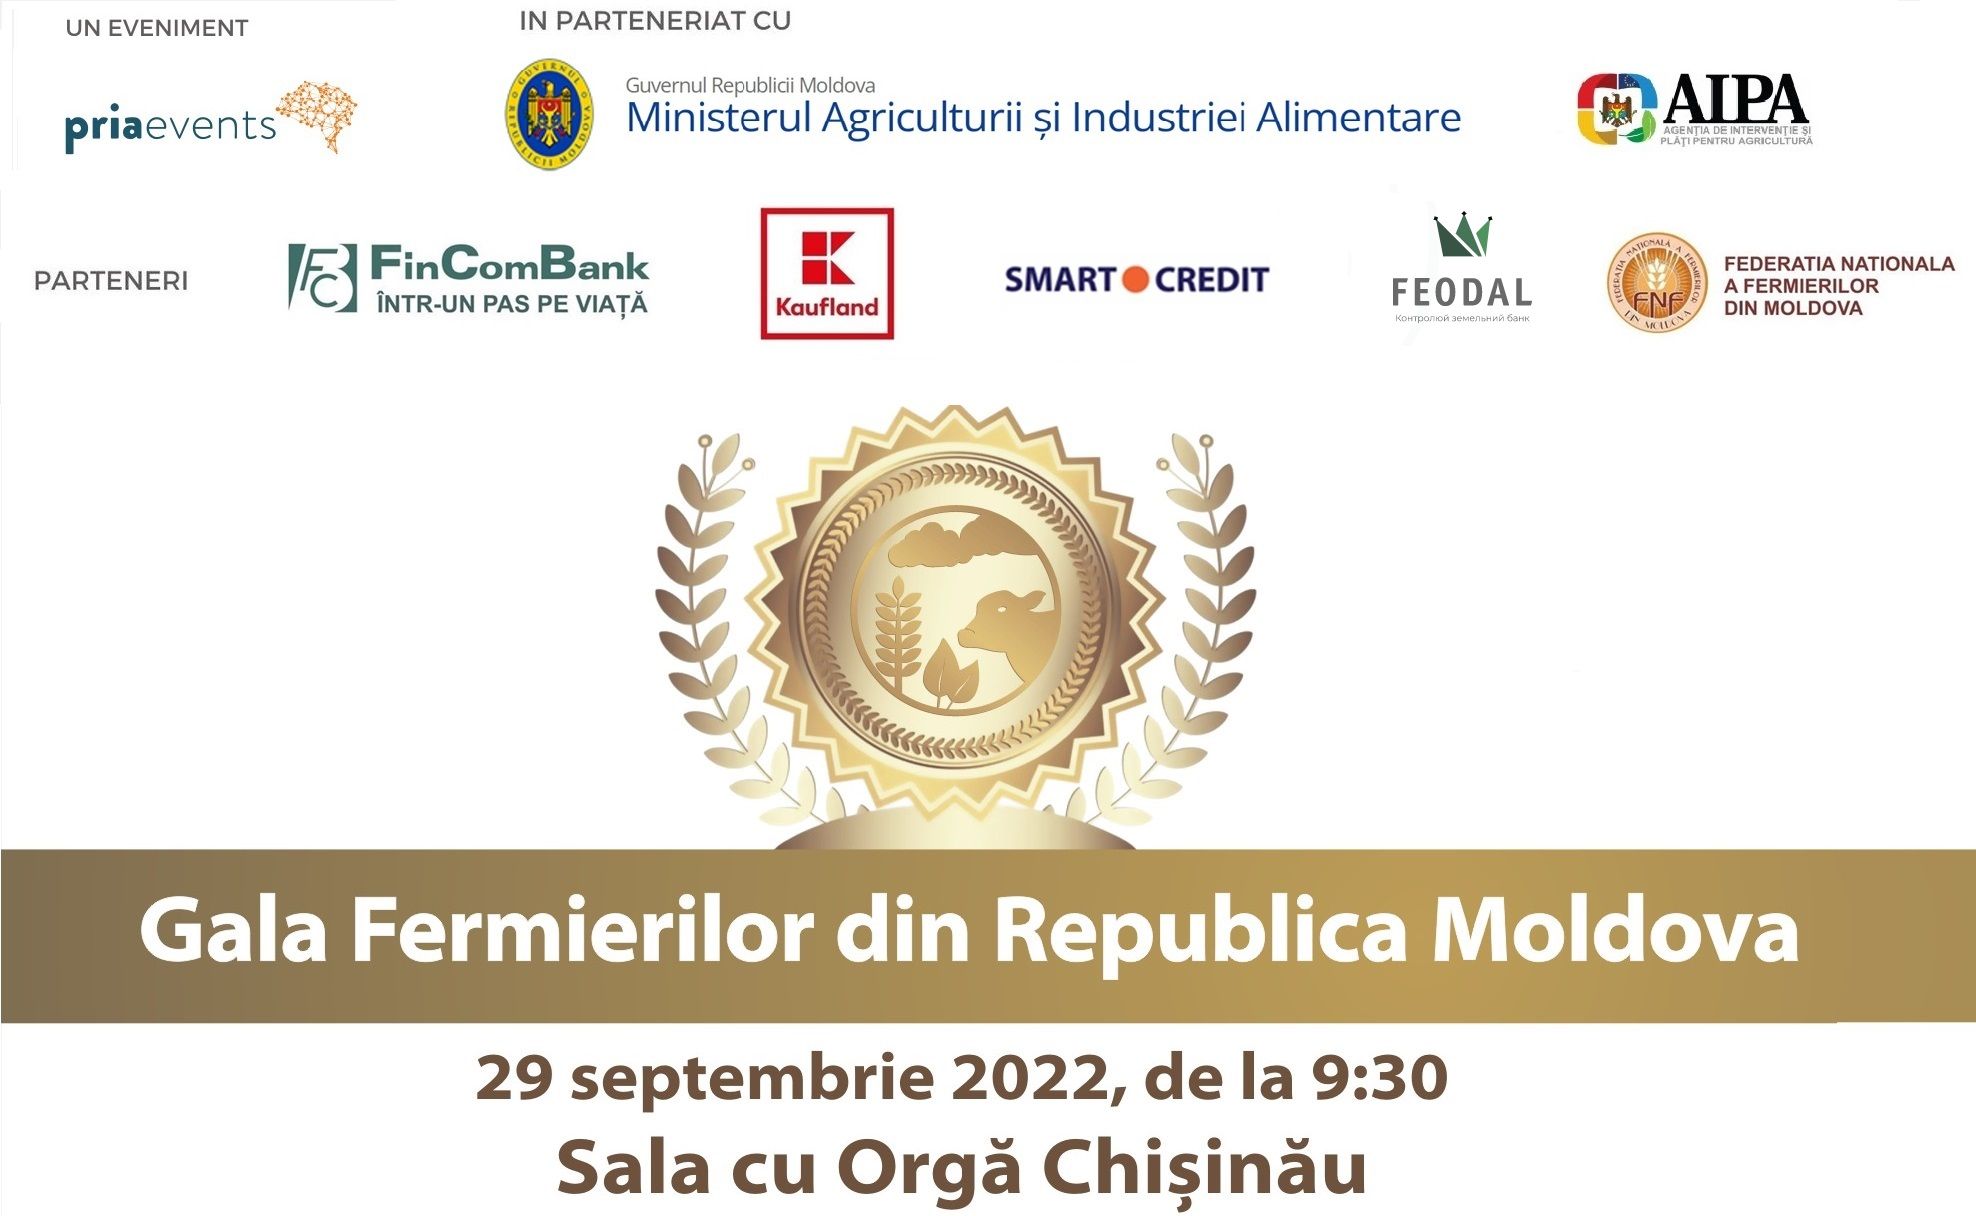 PRIAevents organizează Gala Fermierilor din Republica Moldova